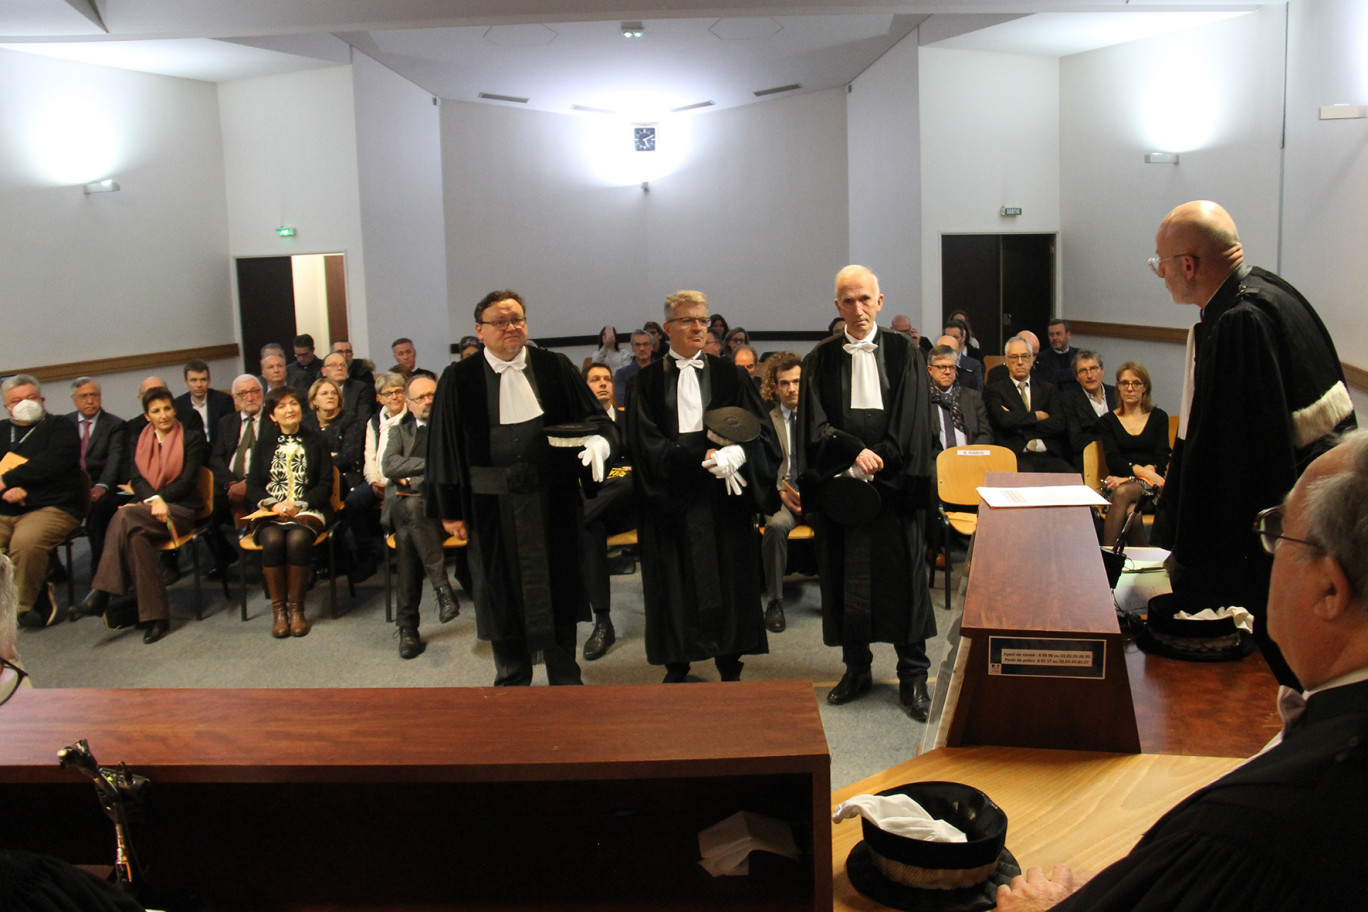 Trois nouveaux juges, Alain Hellenthaler et Franck Sarre élus en novembre et Étienne Demarque, qui revient pour un dernier mandat, rejoignent le tribunal de commerce de Nancy.